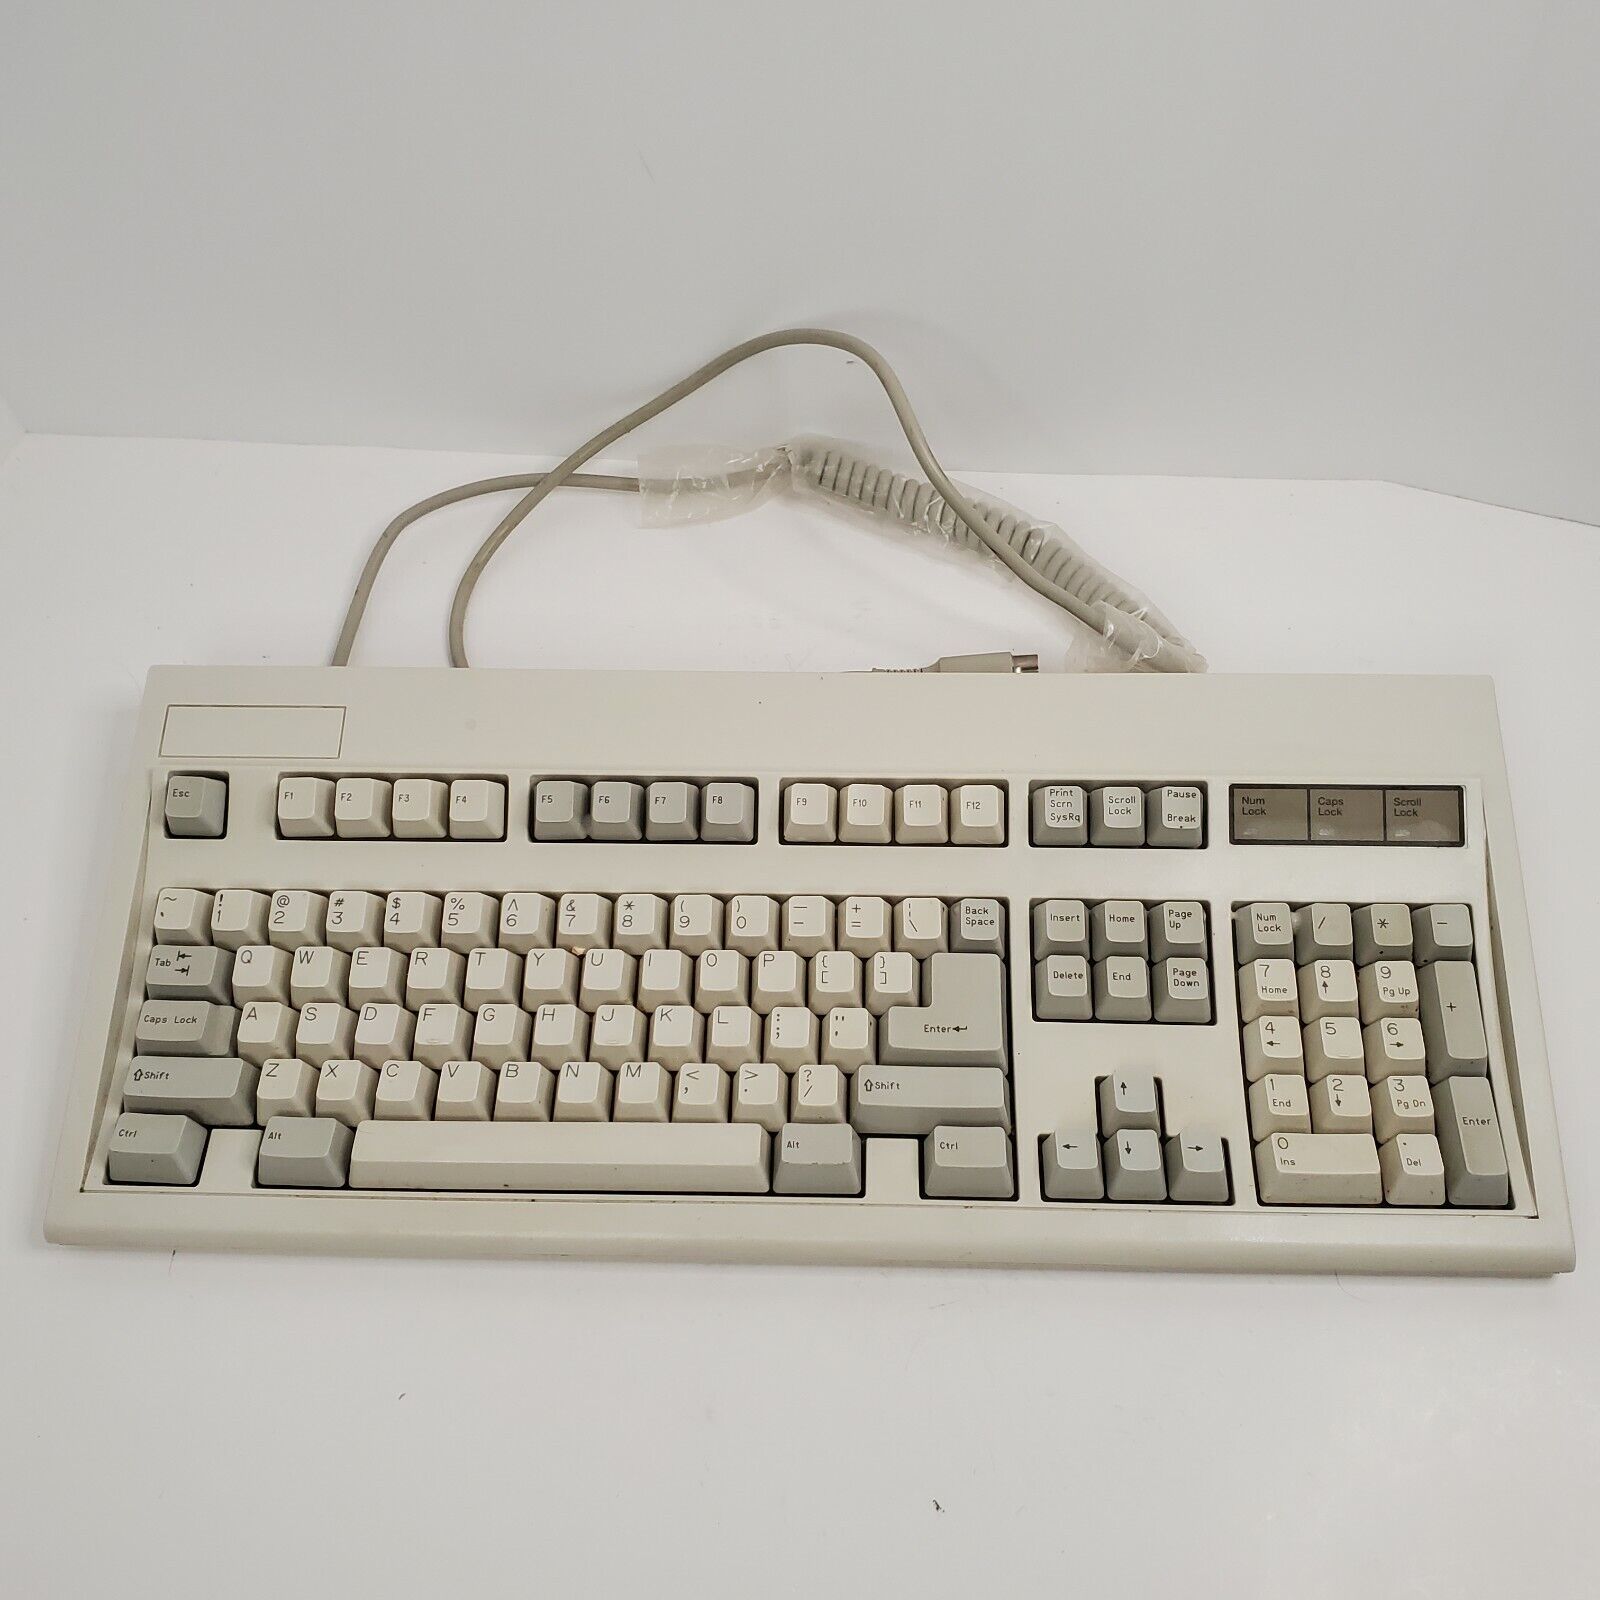 KeyTronic E3601 Keyboard Model E03601QLBSM Vintage 5 Pin